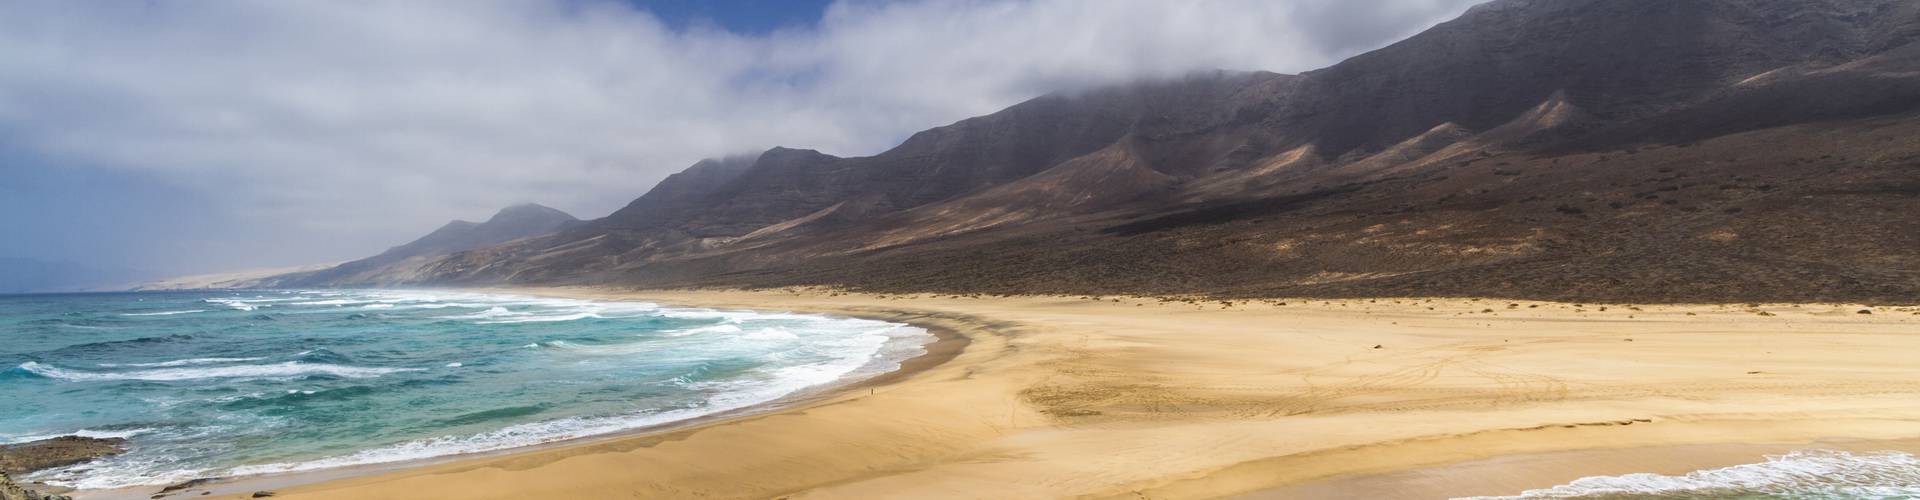 Mur Hotels -  - Las 10 mejores playas de la isla de Fuerteventura